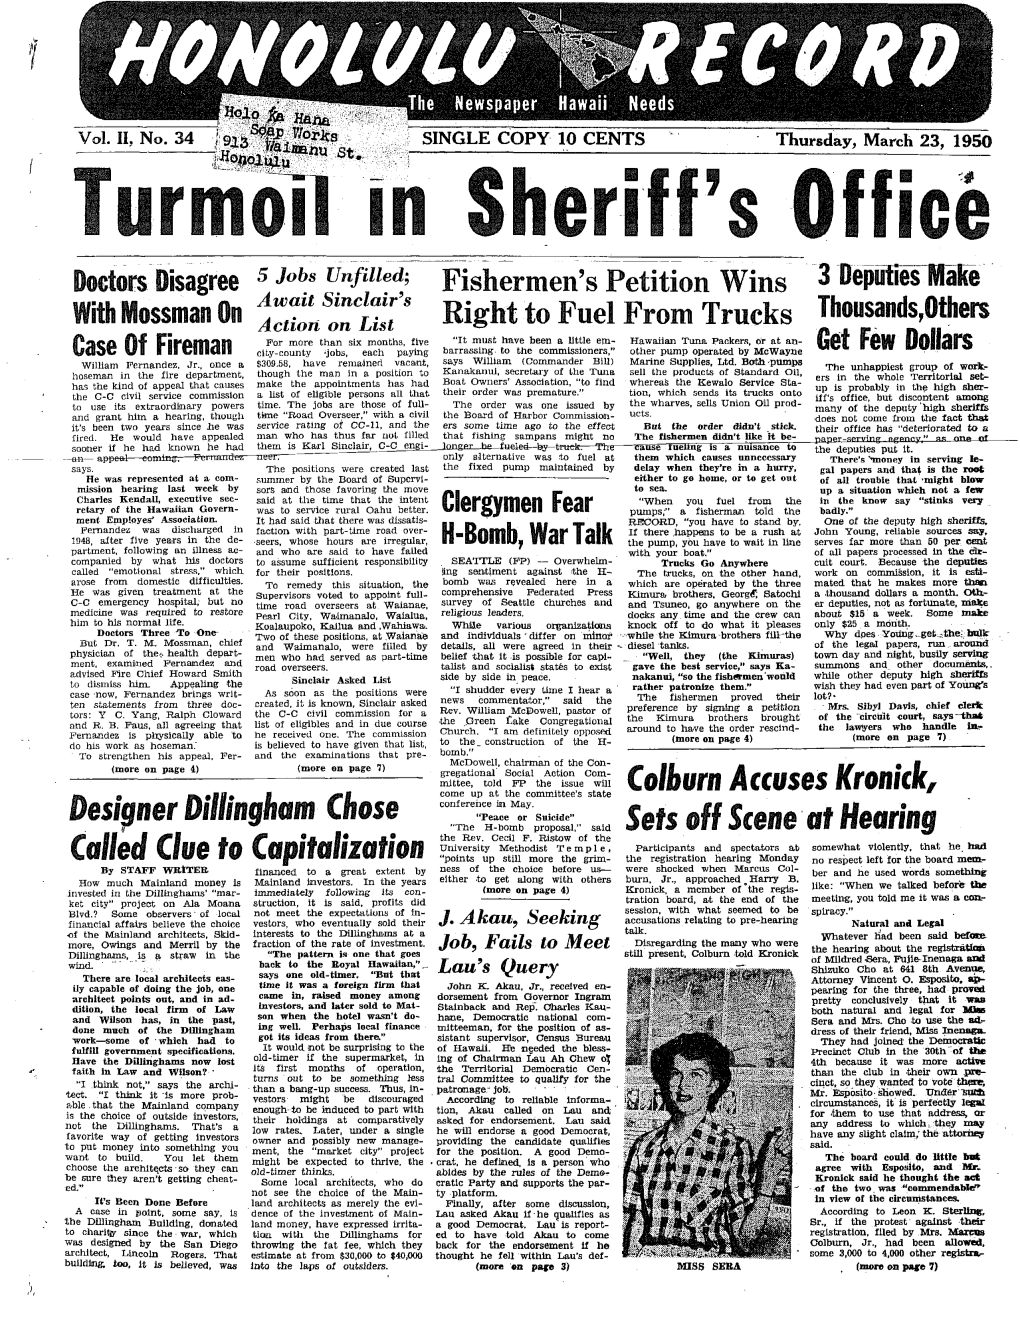 5 Wb St- Turmoil in Sheriff's Office